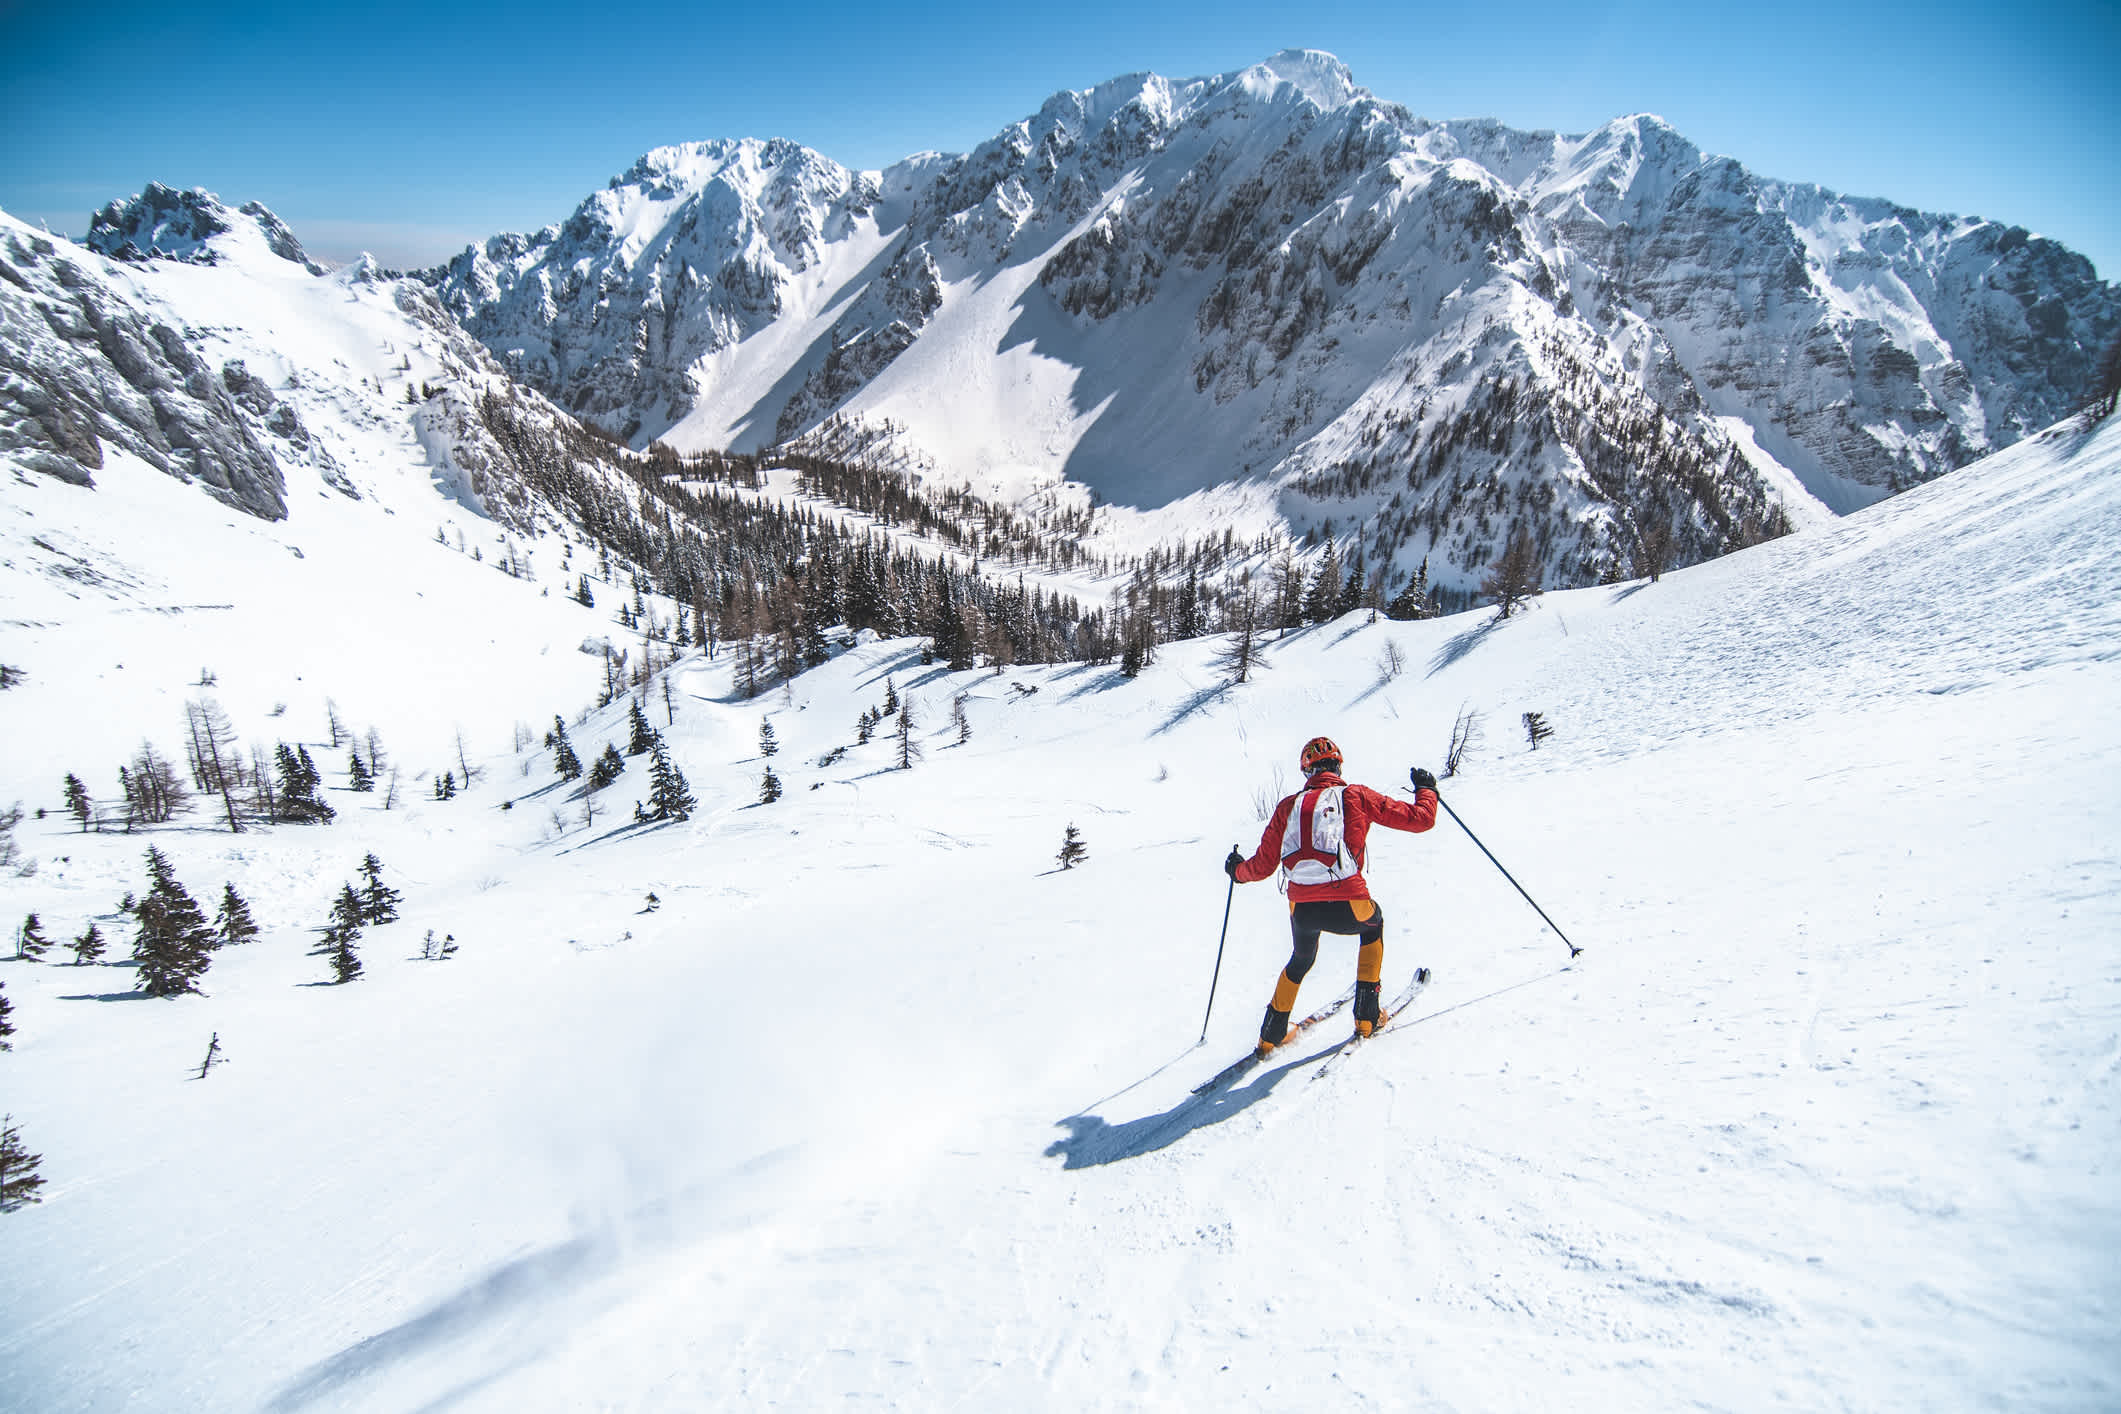 Un skieur en train de descendre les pistes enneigées dans les montagnes des Dolomites en Italie.